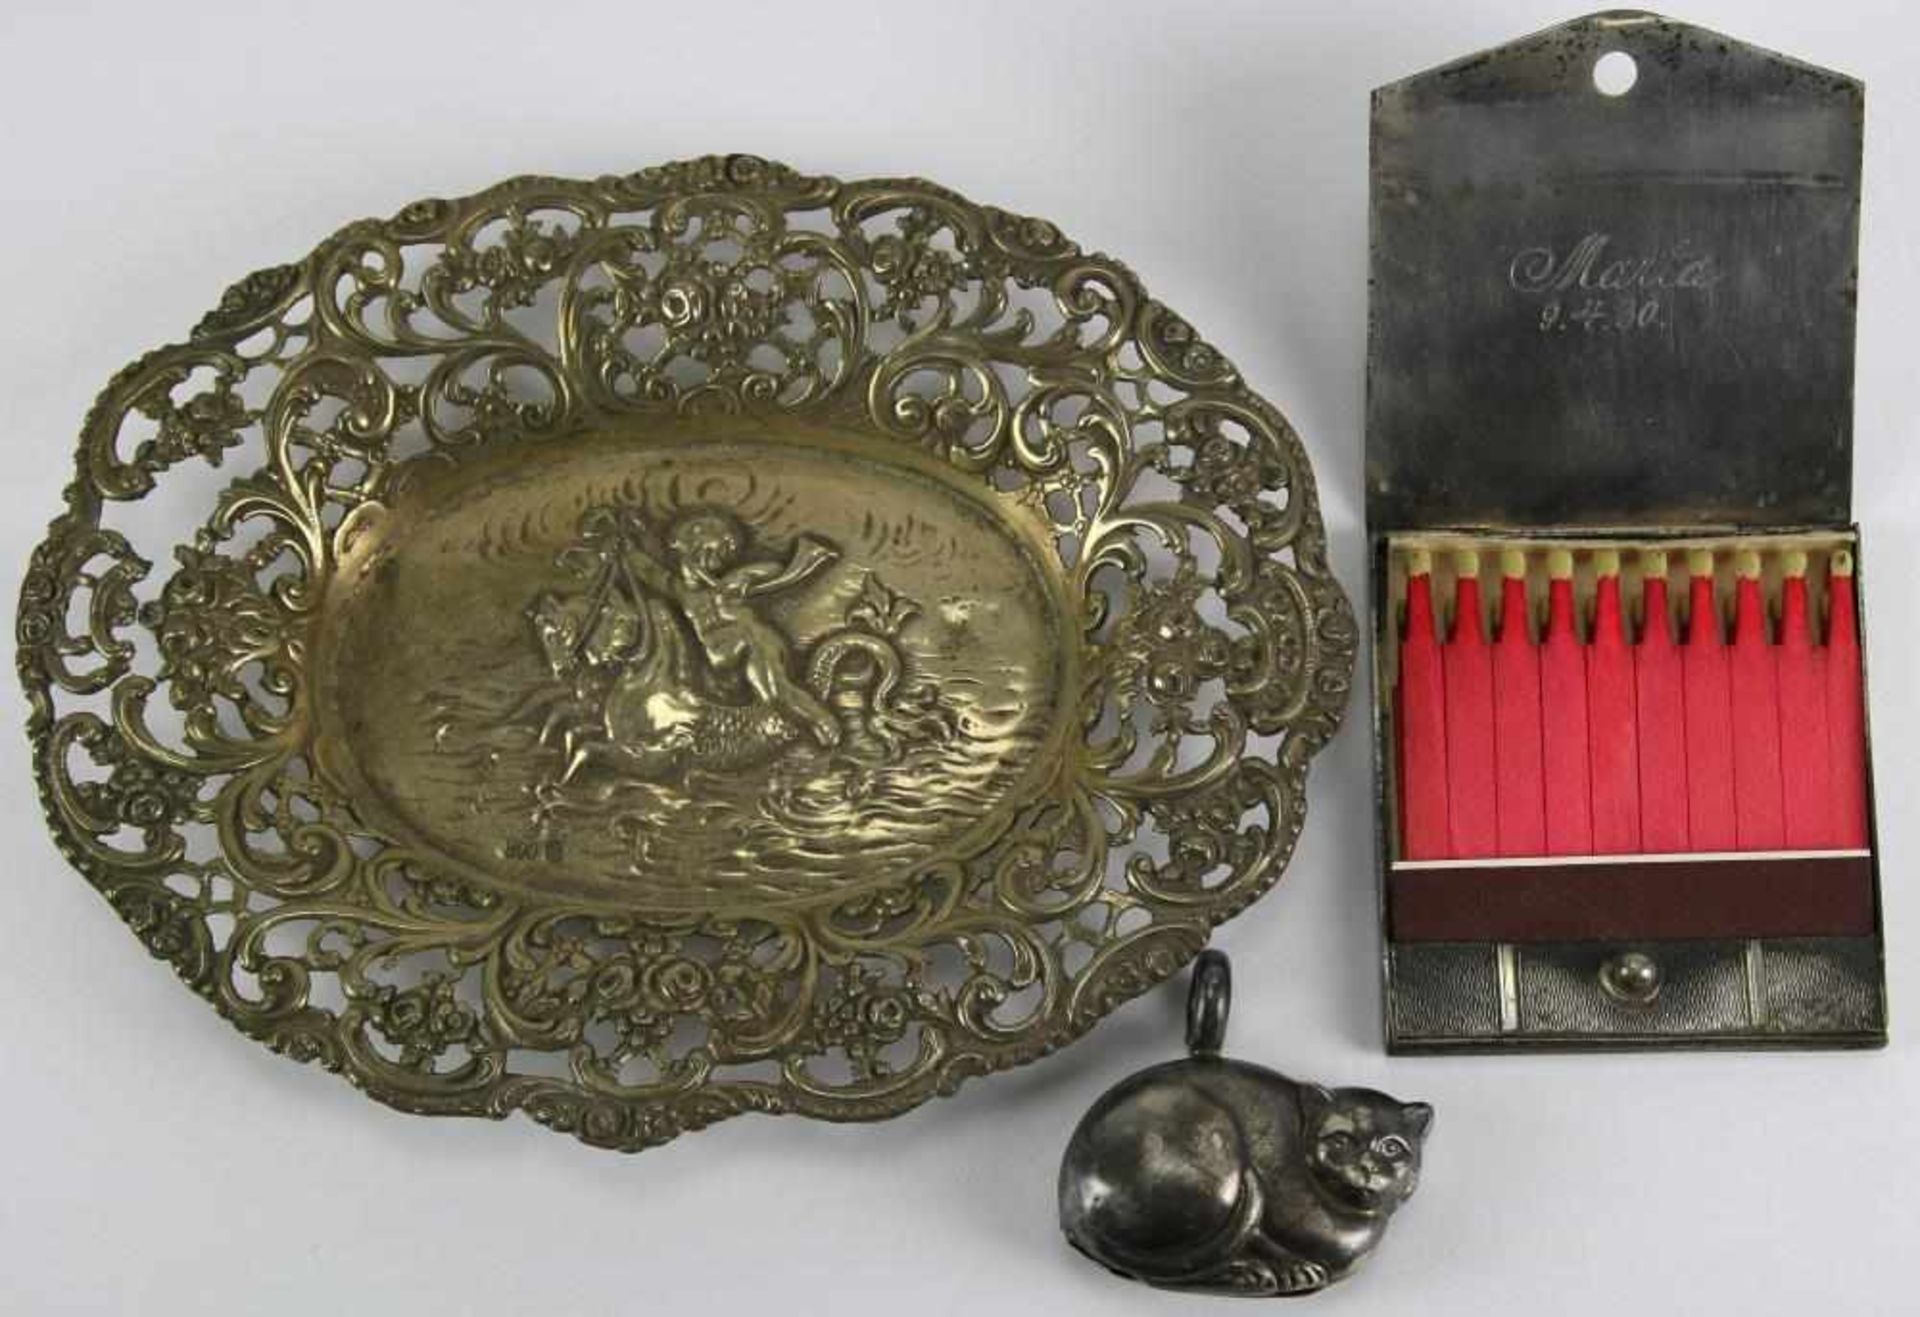 Silberschale und Streichholzbehälter Deutsch um 1900. Silber 800 bzw. 835. Durchbrochen gearbeitetes - Bild 2 aus 3